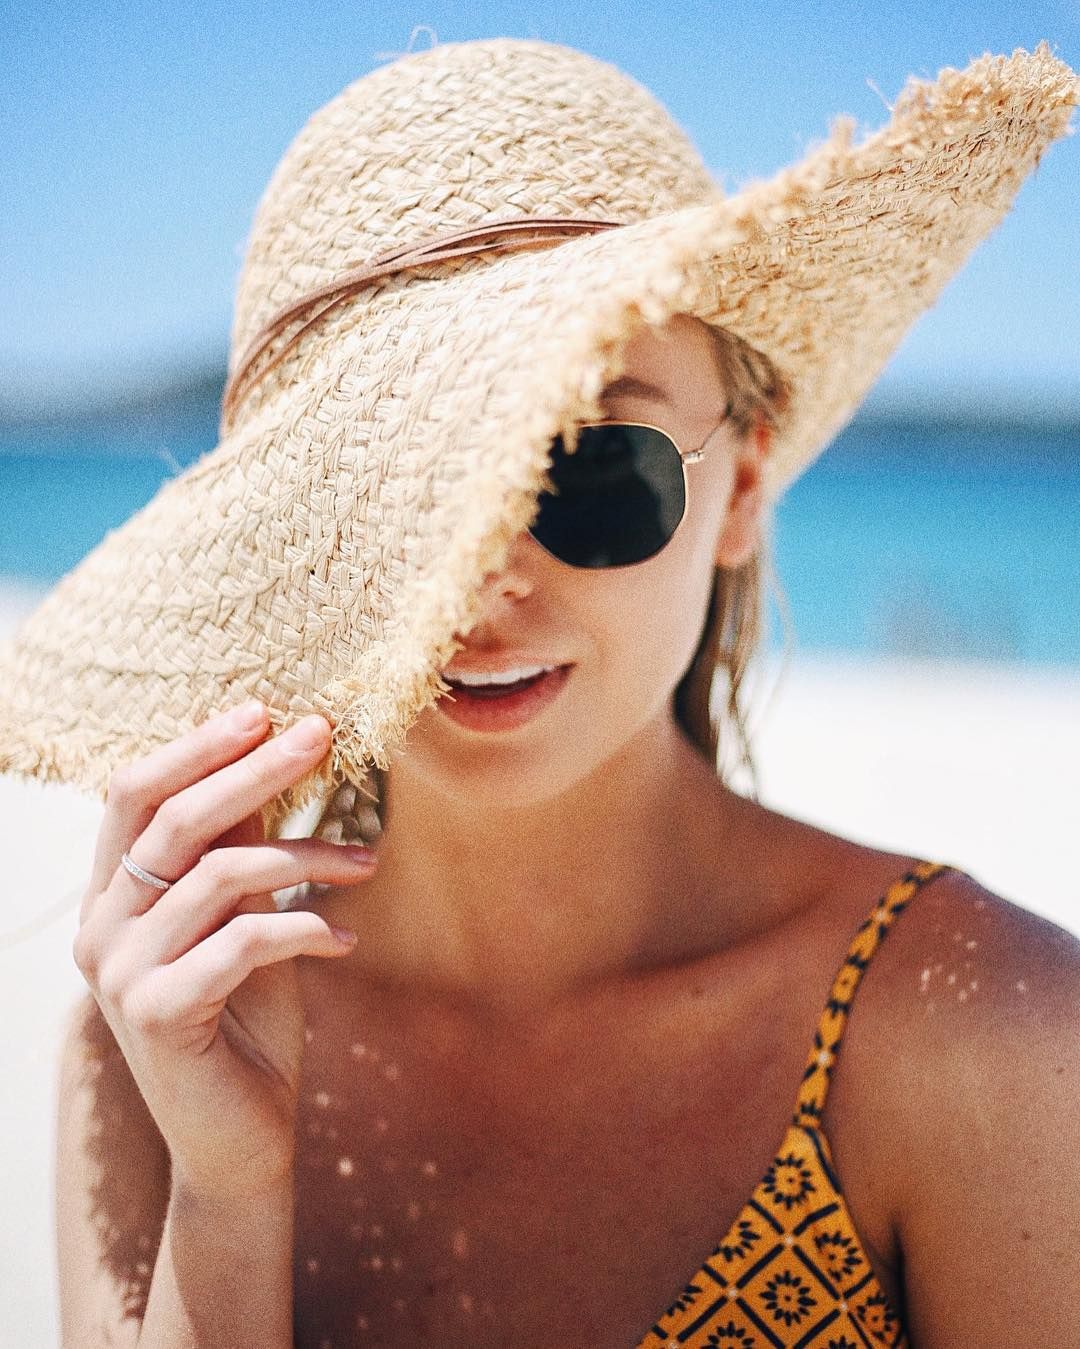 occhiali da sole e cappello in spiaggia